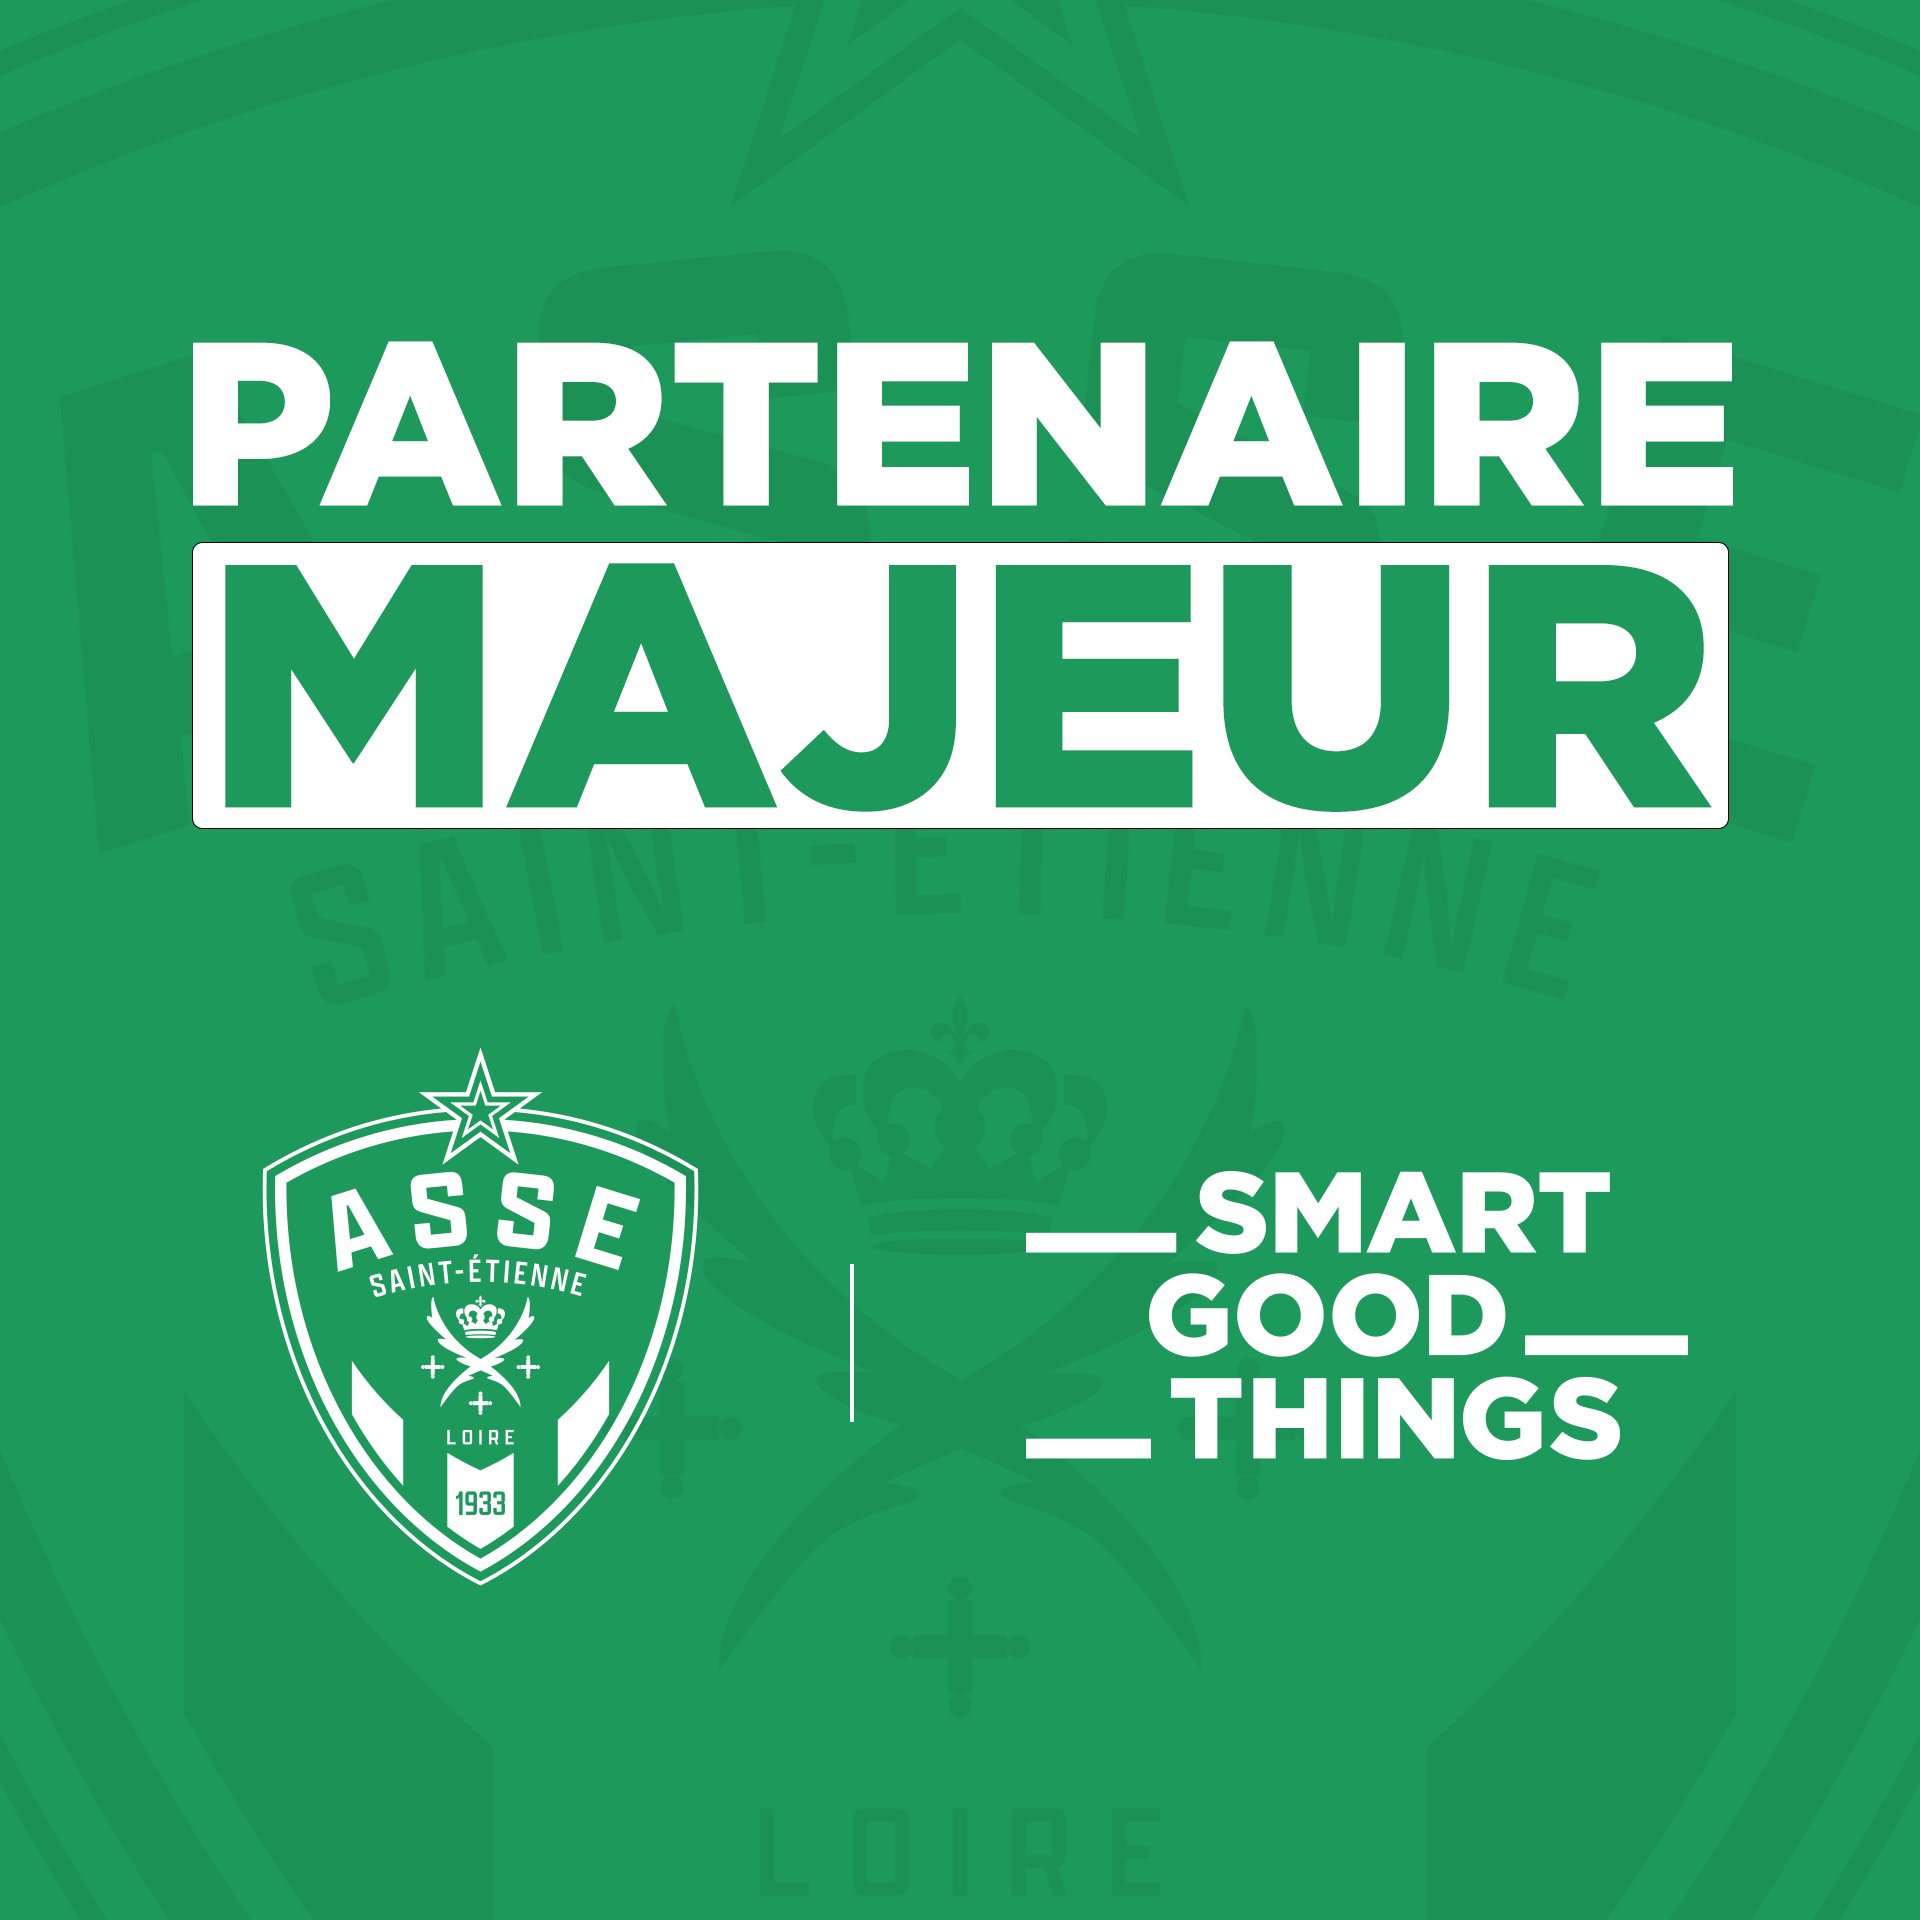 Merch' : quelle stratégie de développement pour l'AS Saint-Etienne ?